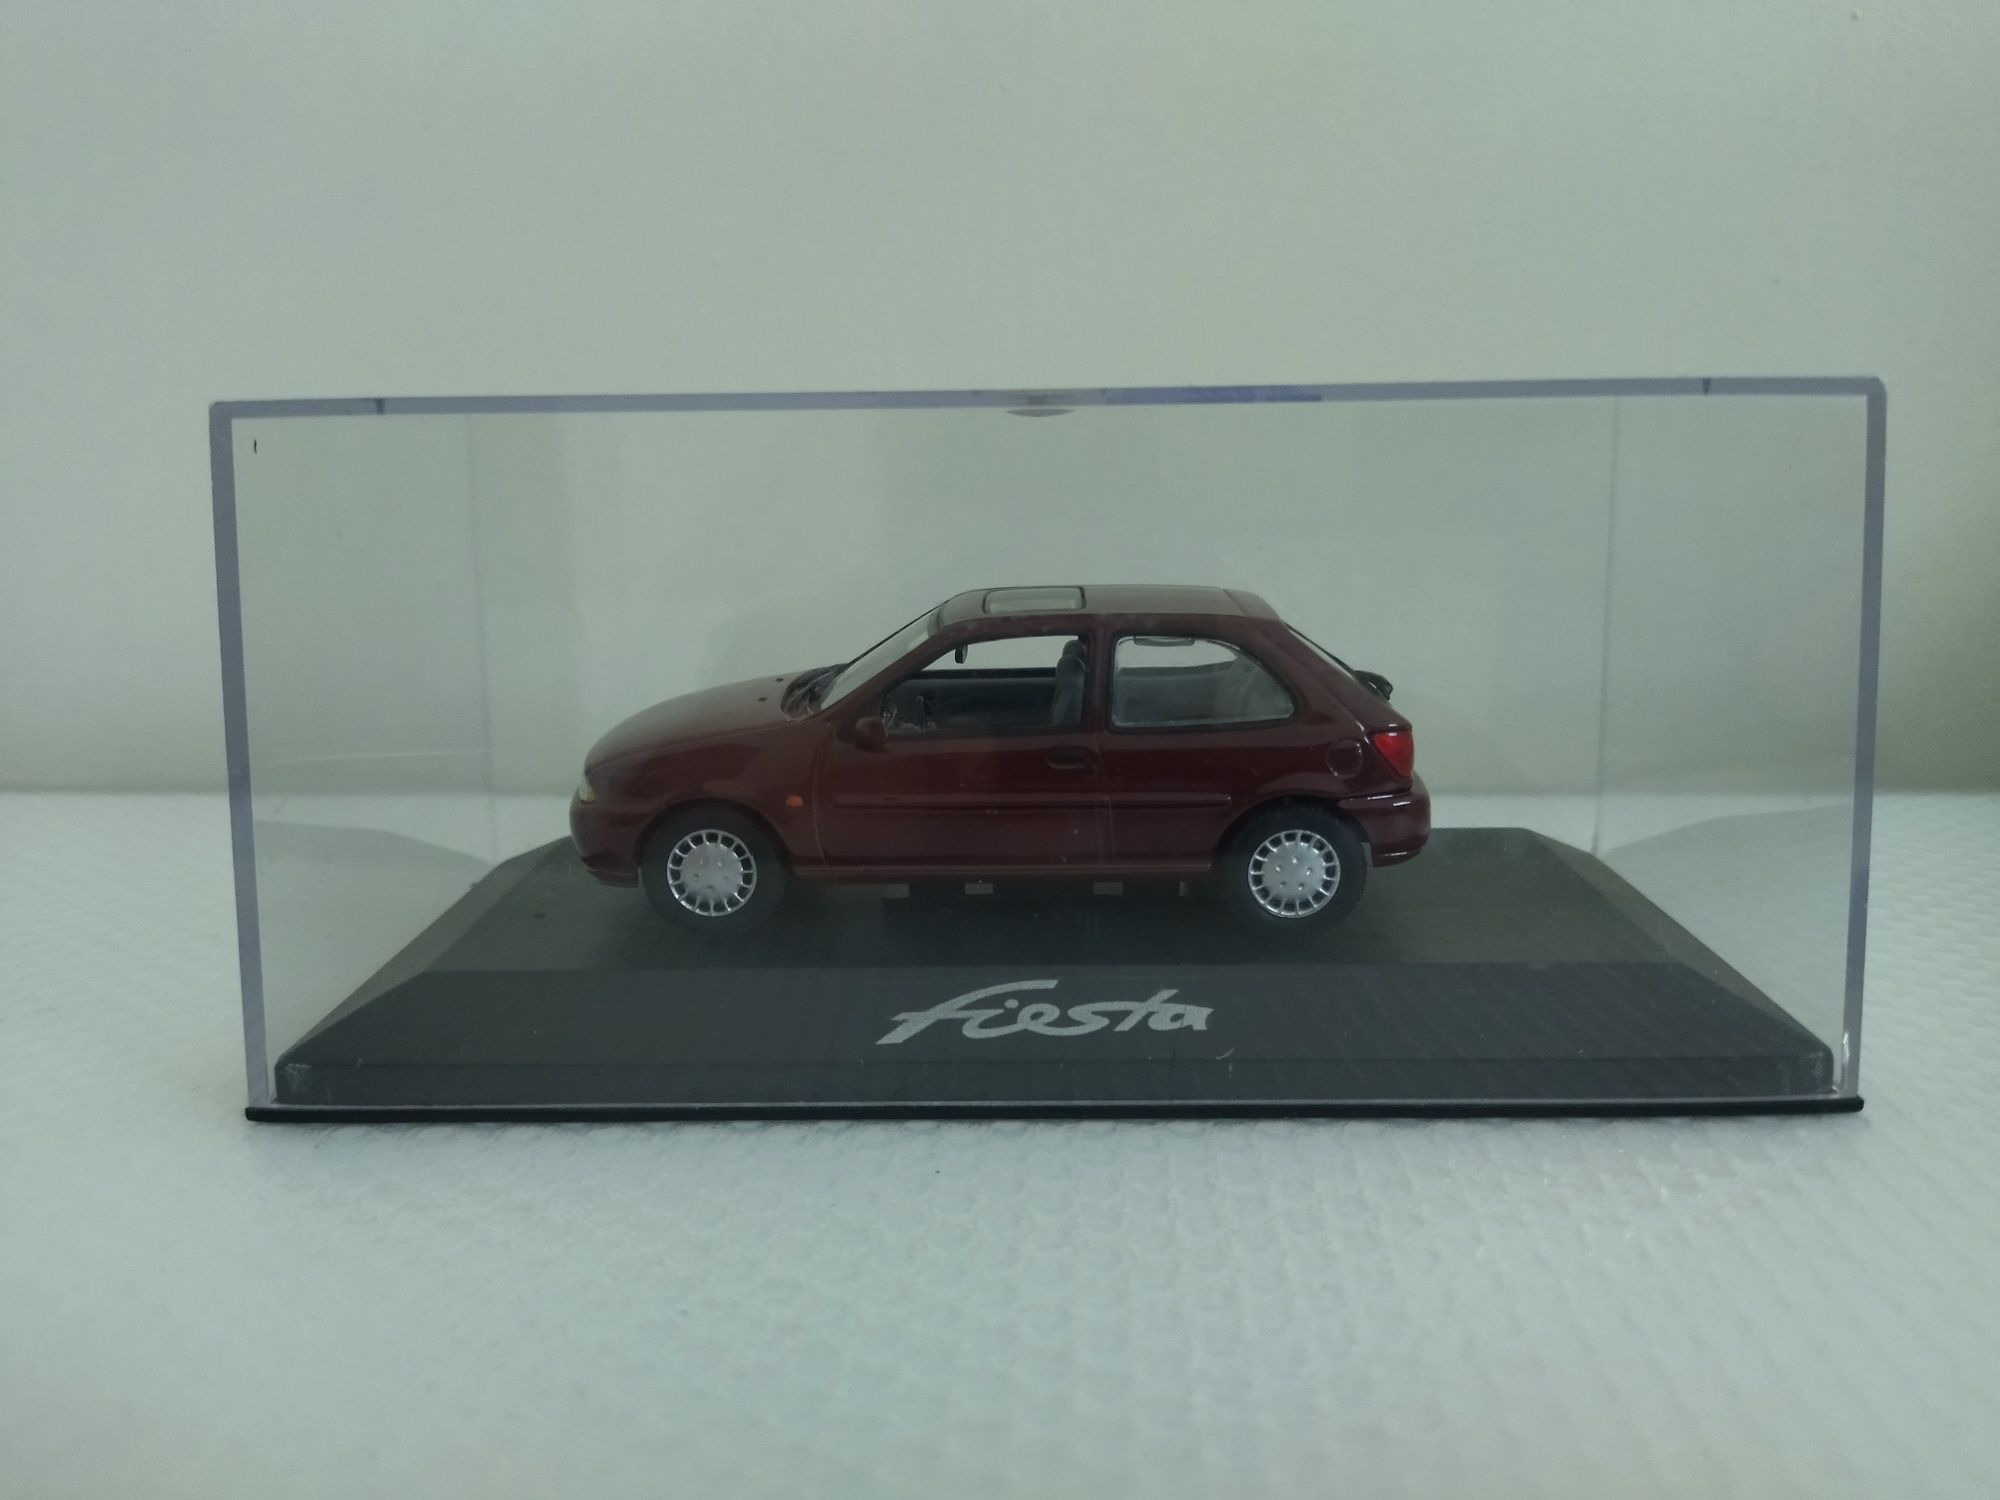 Miniatura Ford Fiesta 1/43 Nova